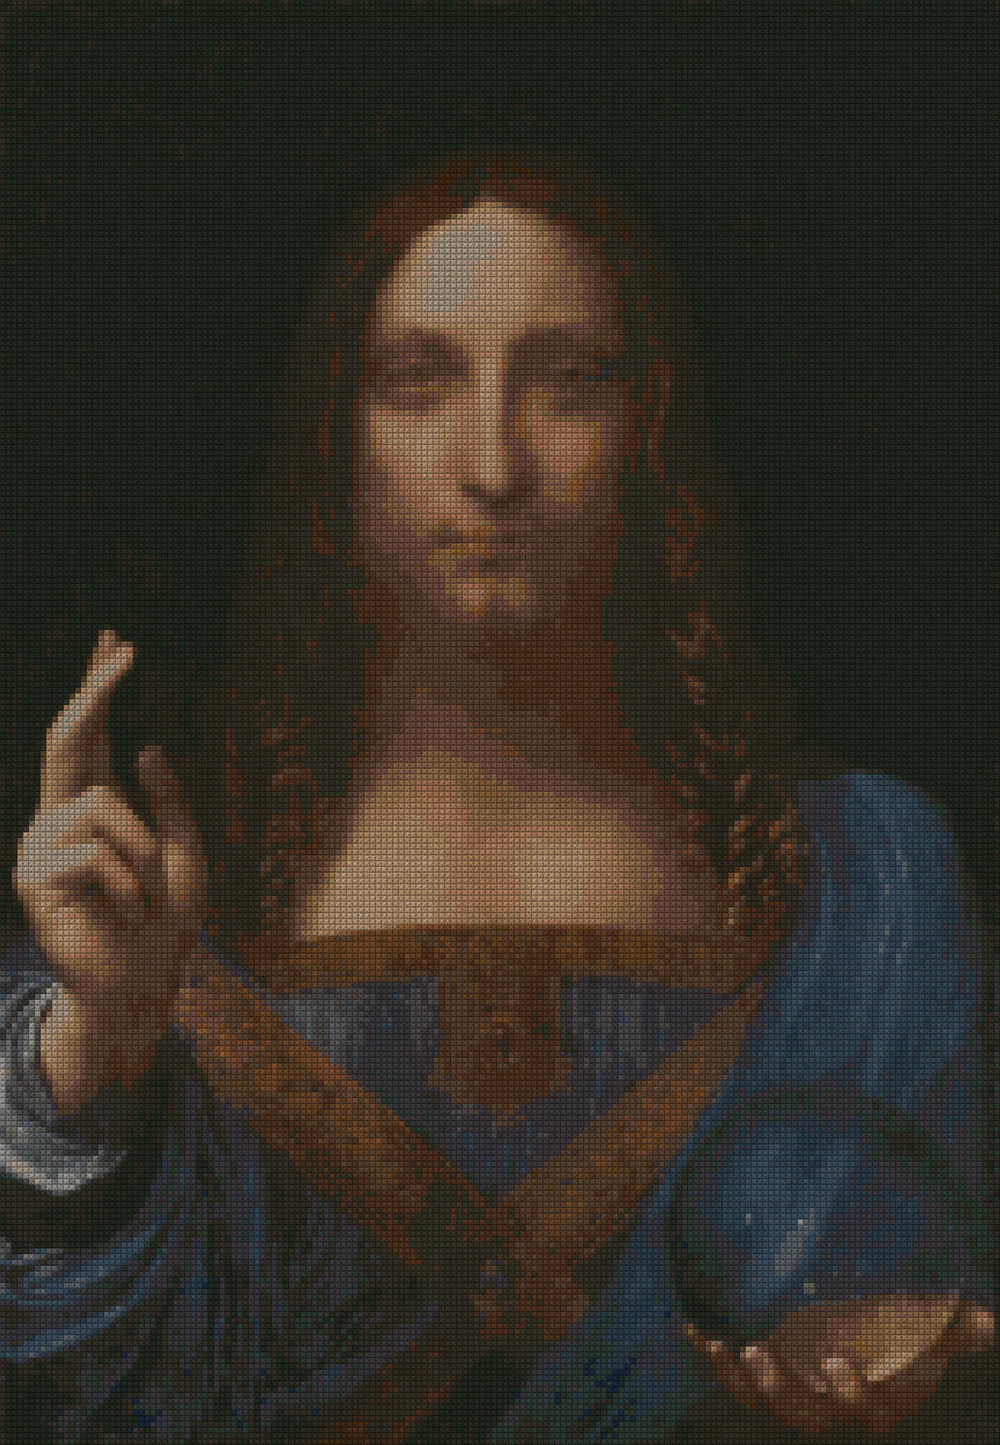 pittori_classici/leonardo/Leonardo_Salvator_Mundi-173x250.jpg